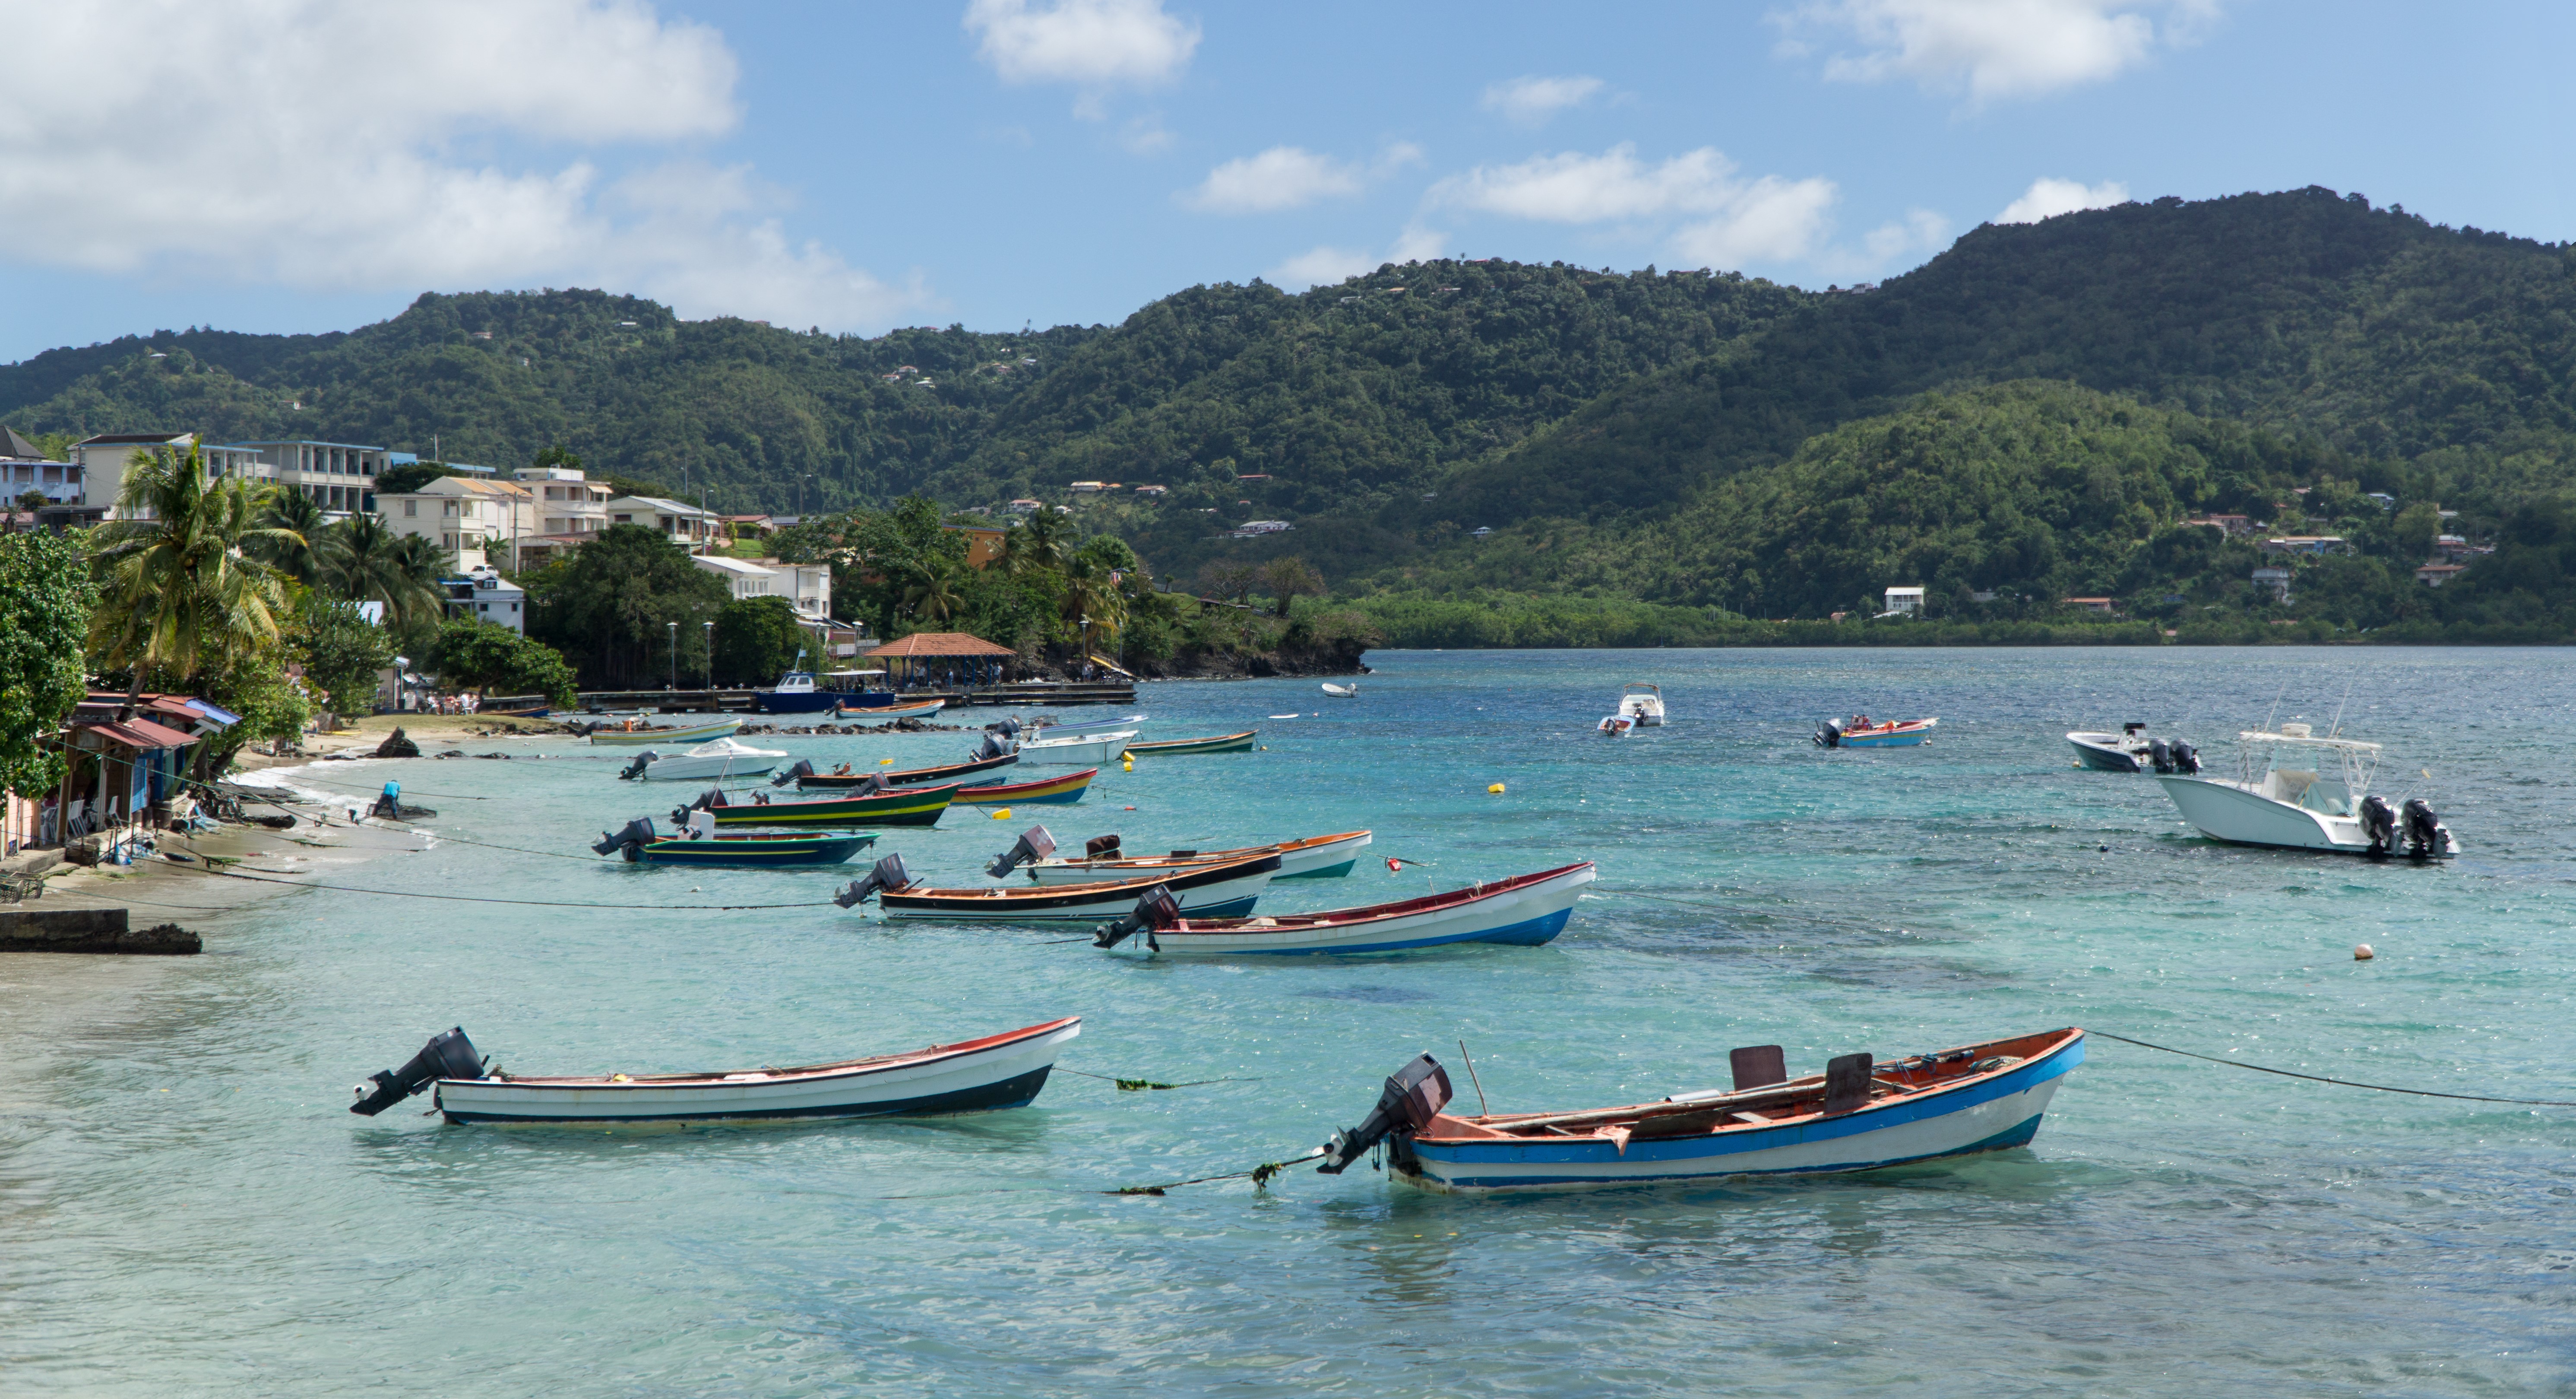     Une aide exceptionnelle décrétée pour les marins pêcheurs de Martinique et de Guadeloupe

